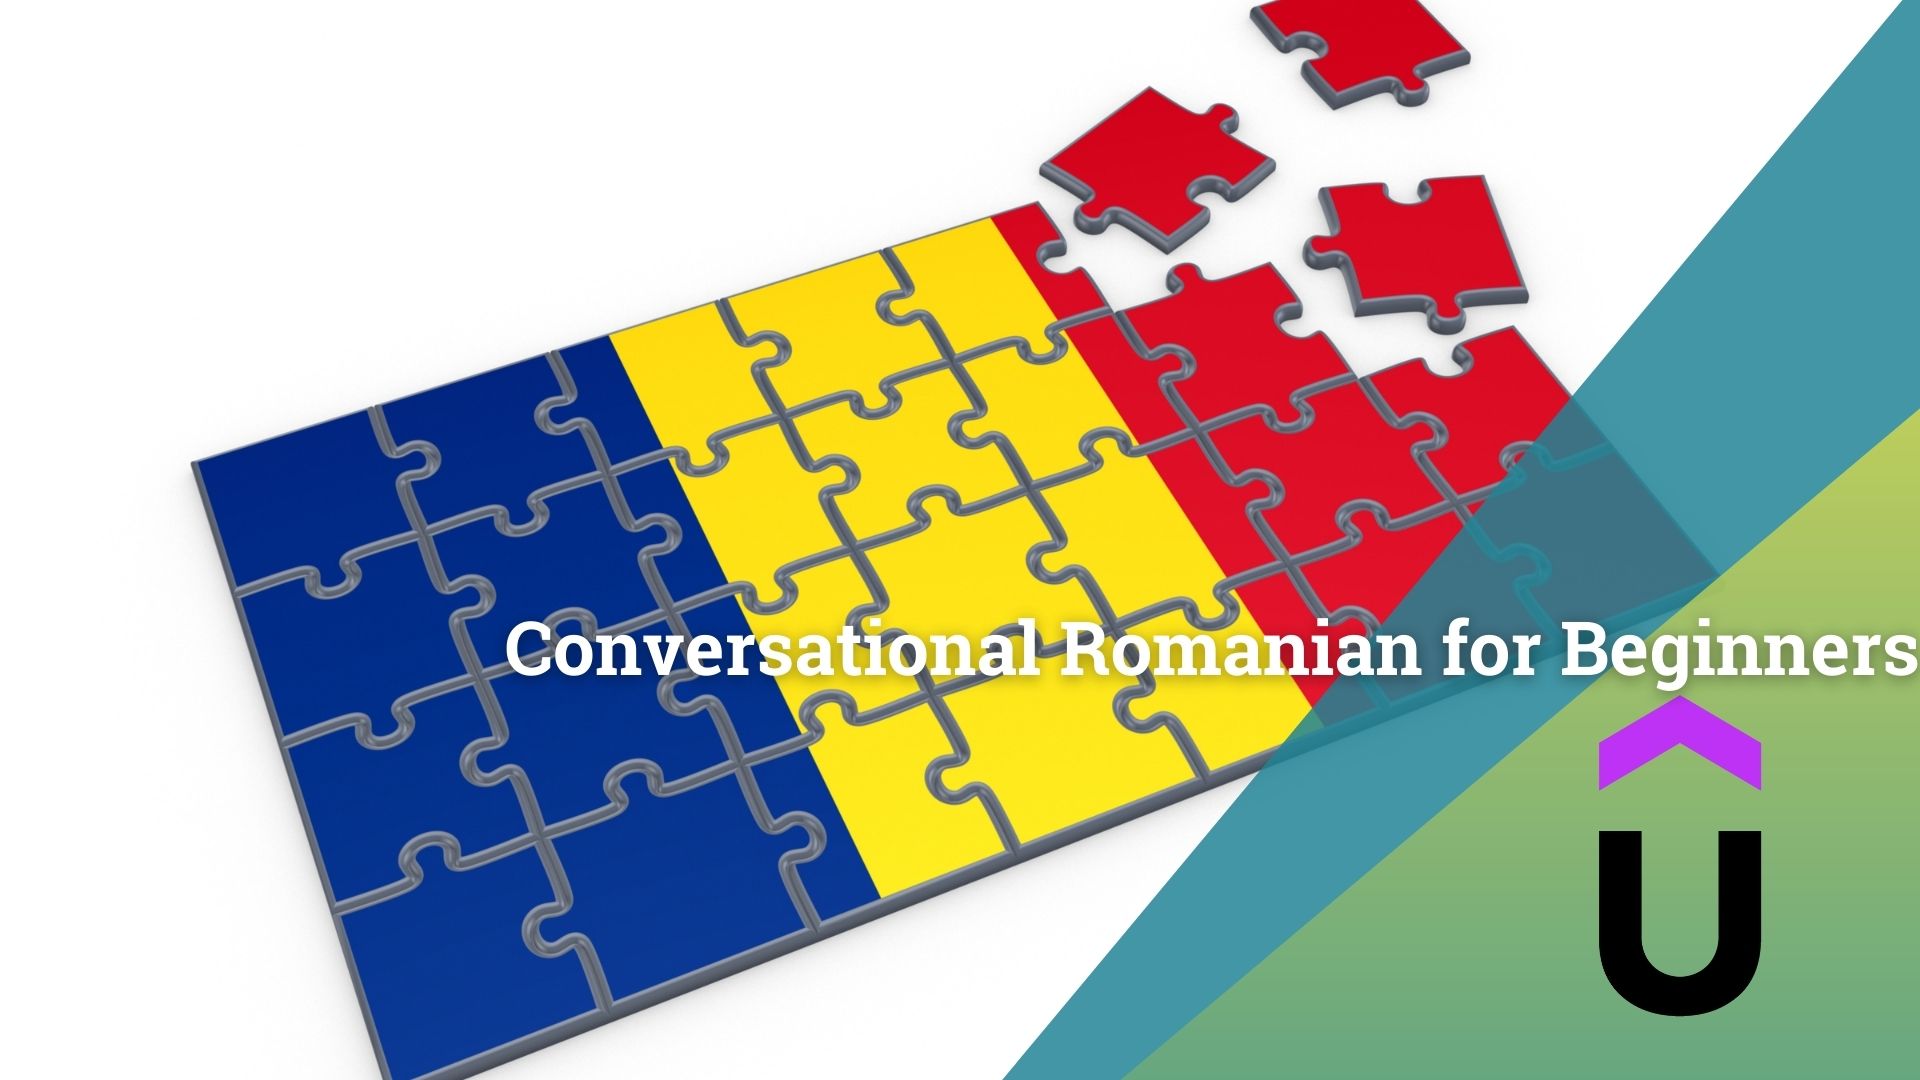 Conversational-Romanian-for-Beginners